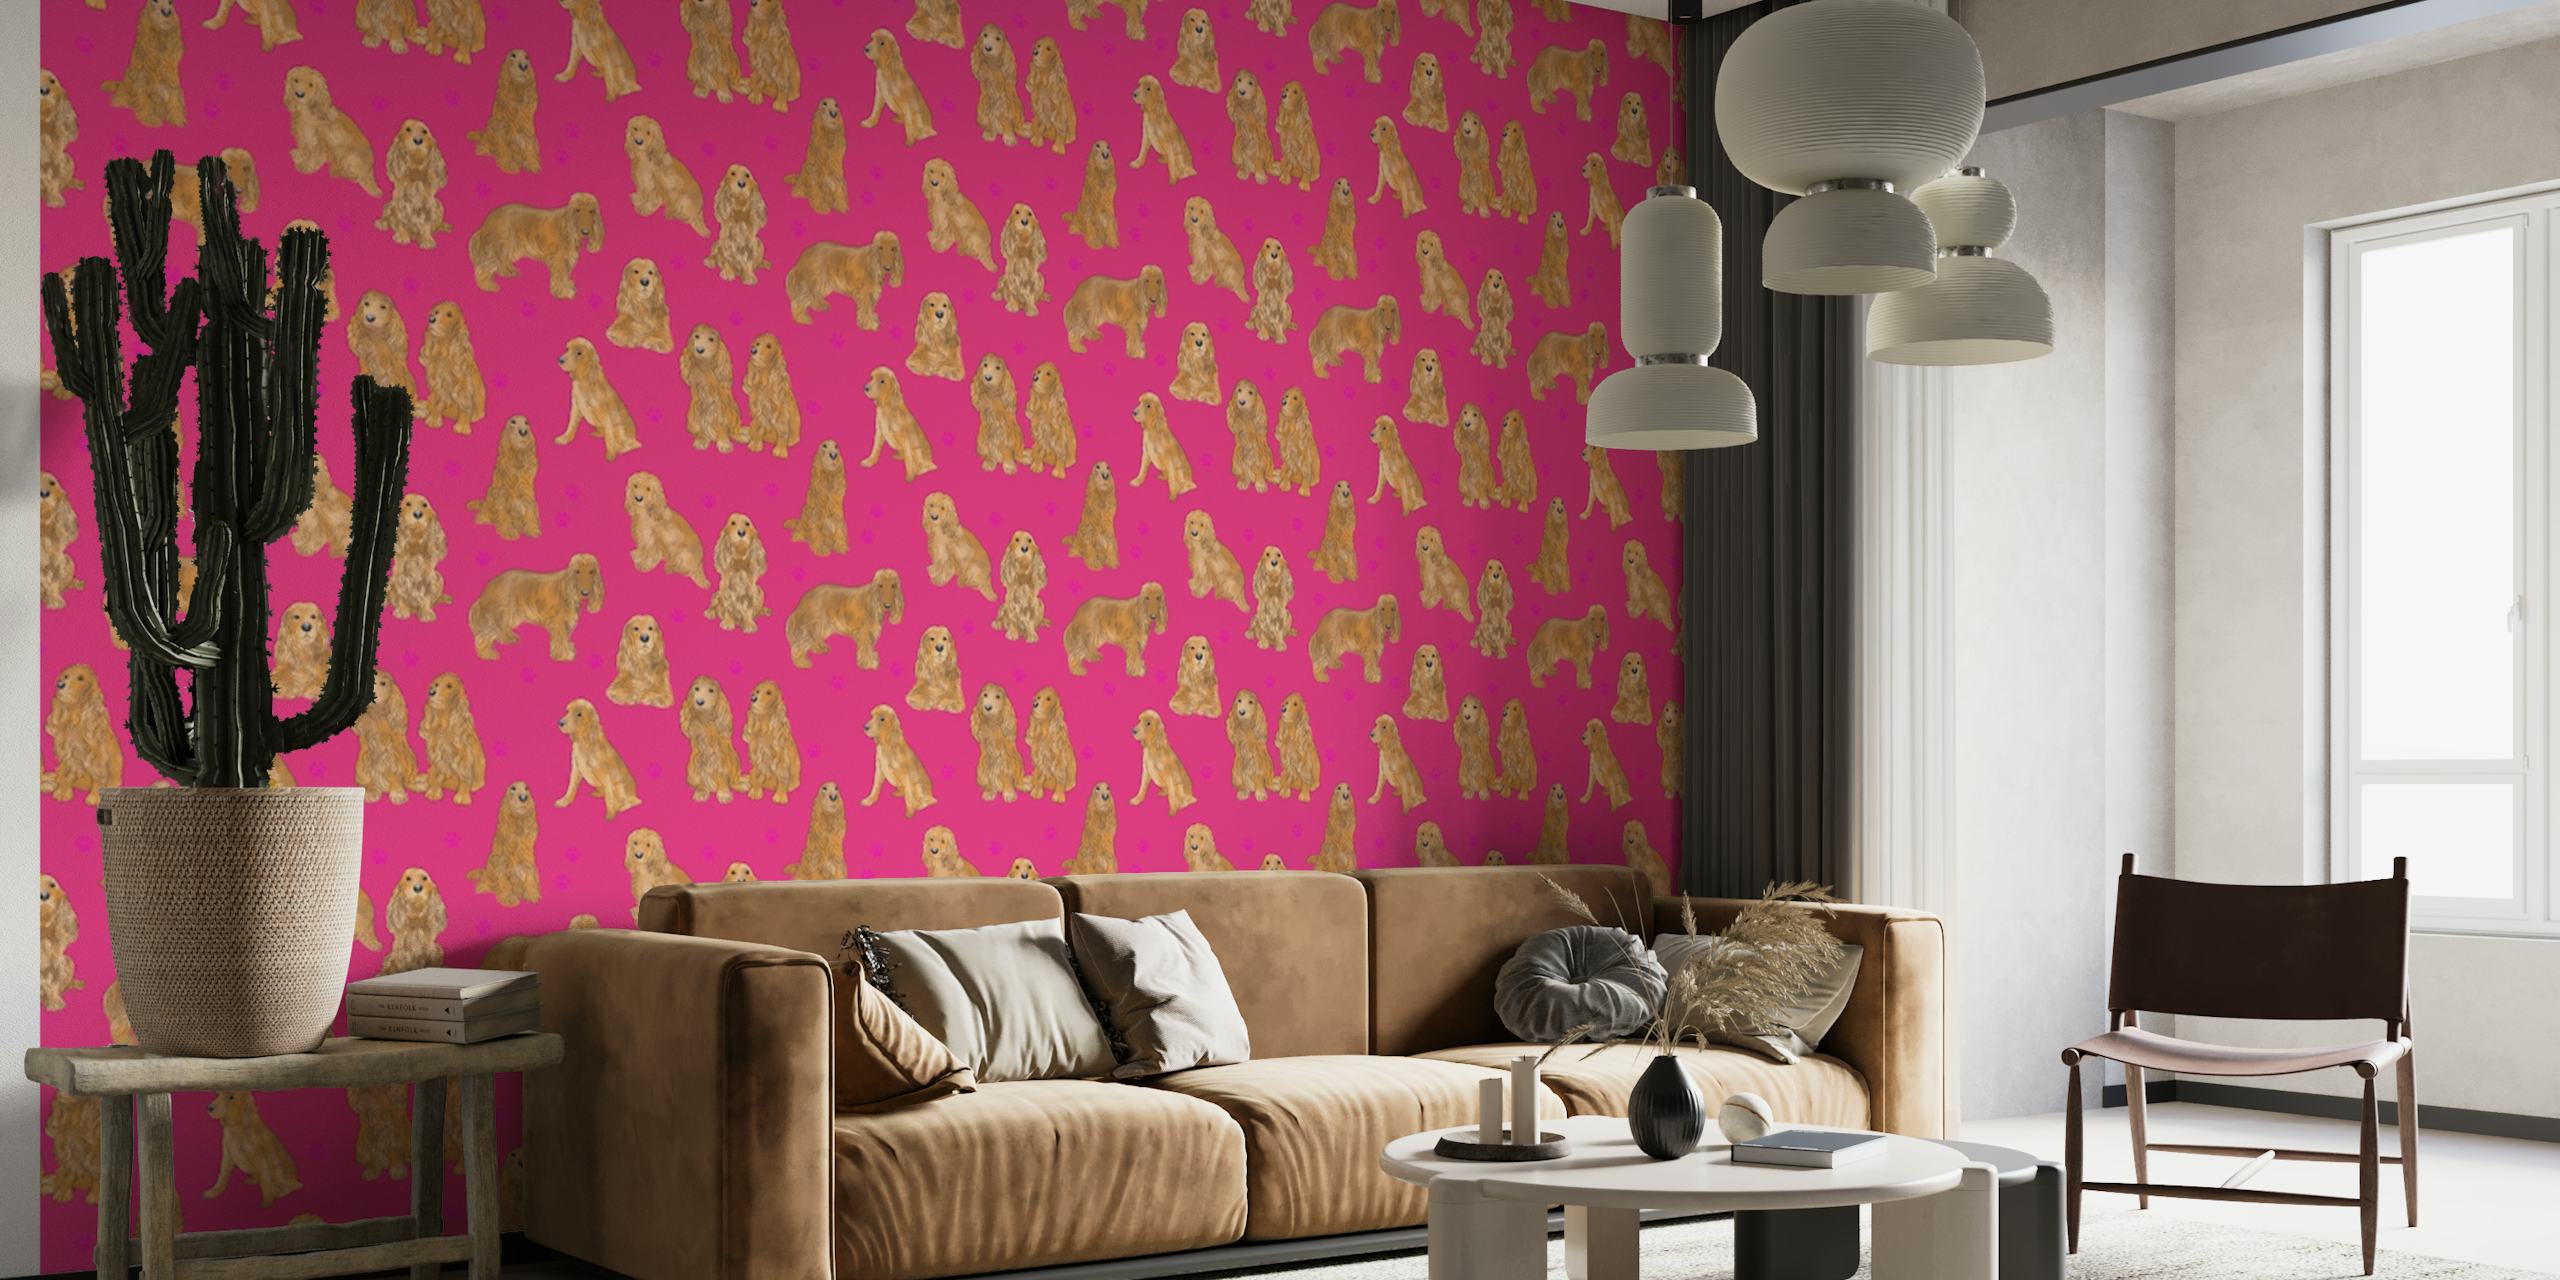 Fotobehang met patroon van Cocker Spaniel-honden op roze achtergrond